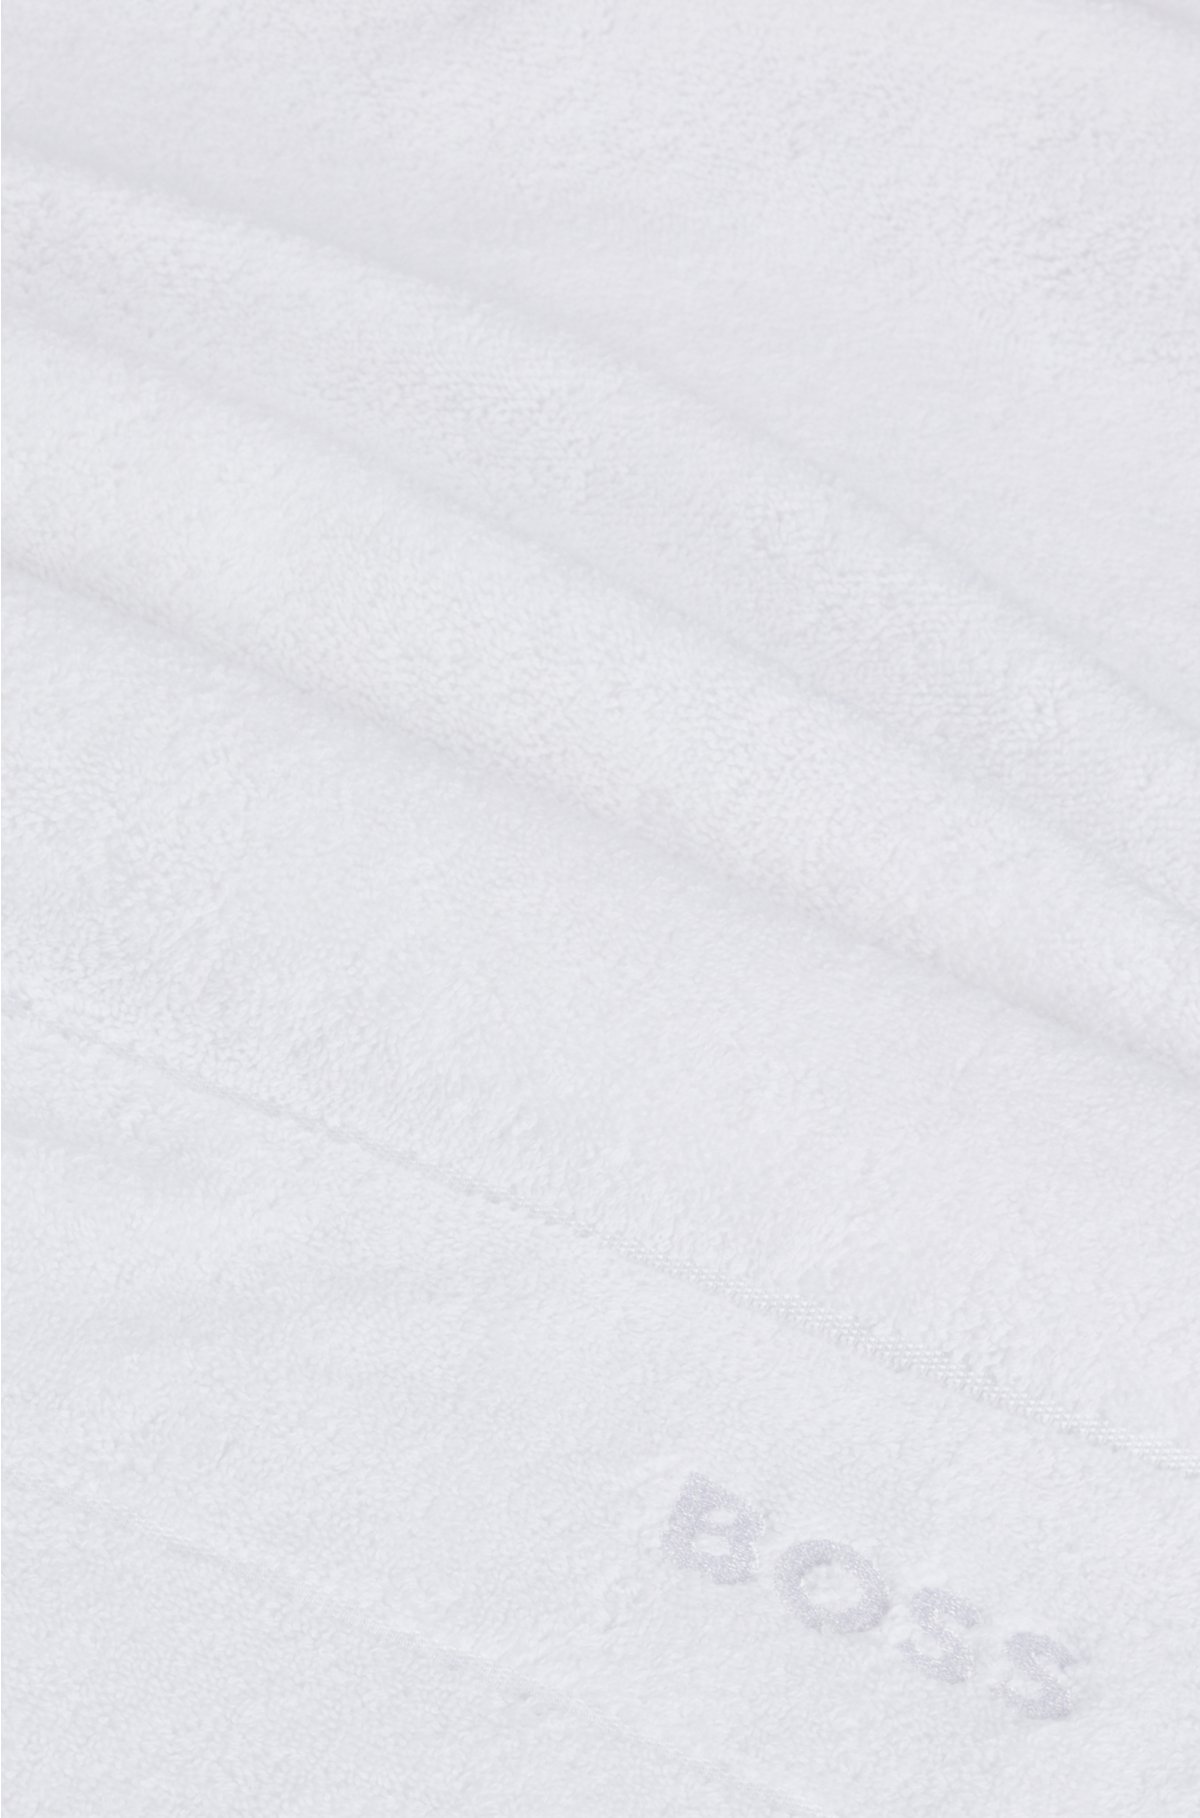 Cotton bath sheet with white logo embroidery, White